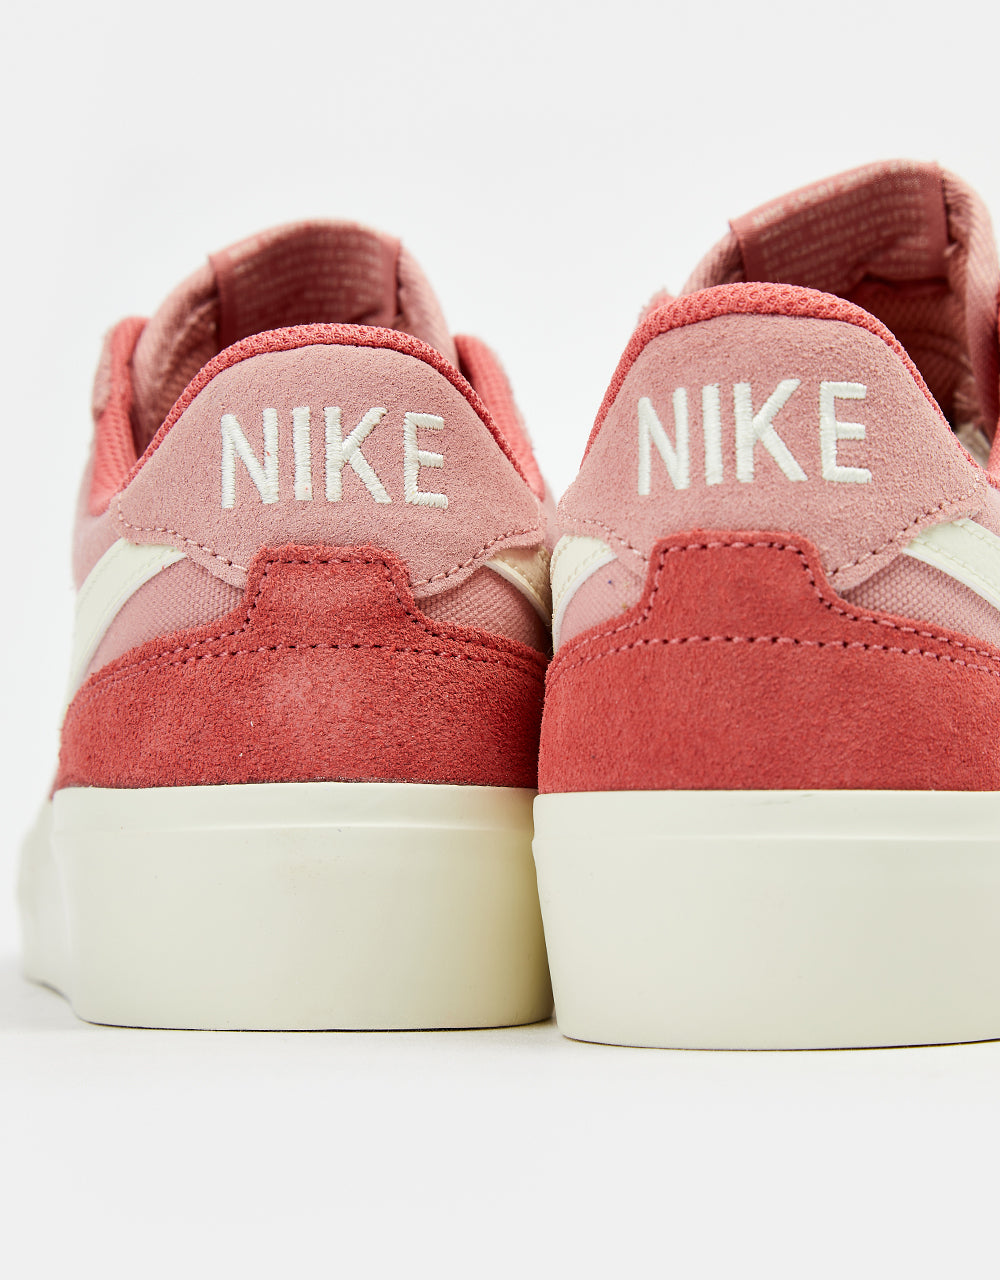 Nike SB Zoom Pogo Plus Skate Shoes - Red Stardust/Coconut Milk-Adobe-Coconut Milk